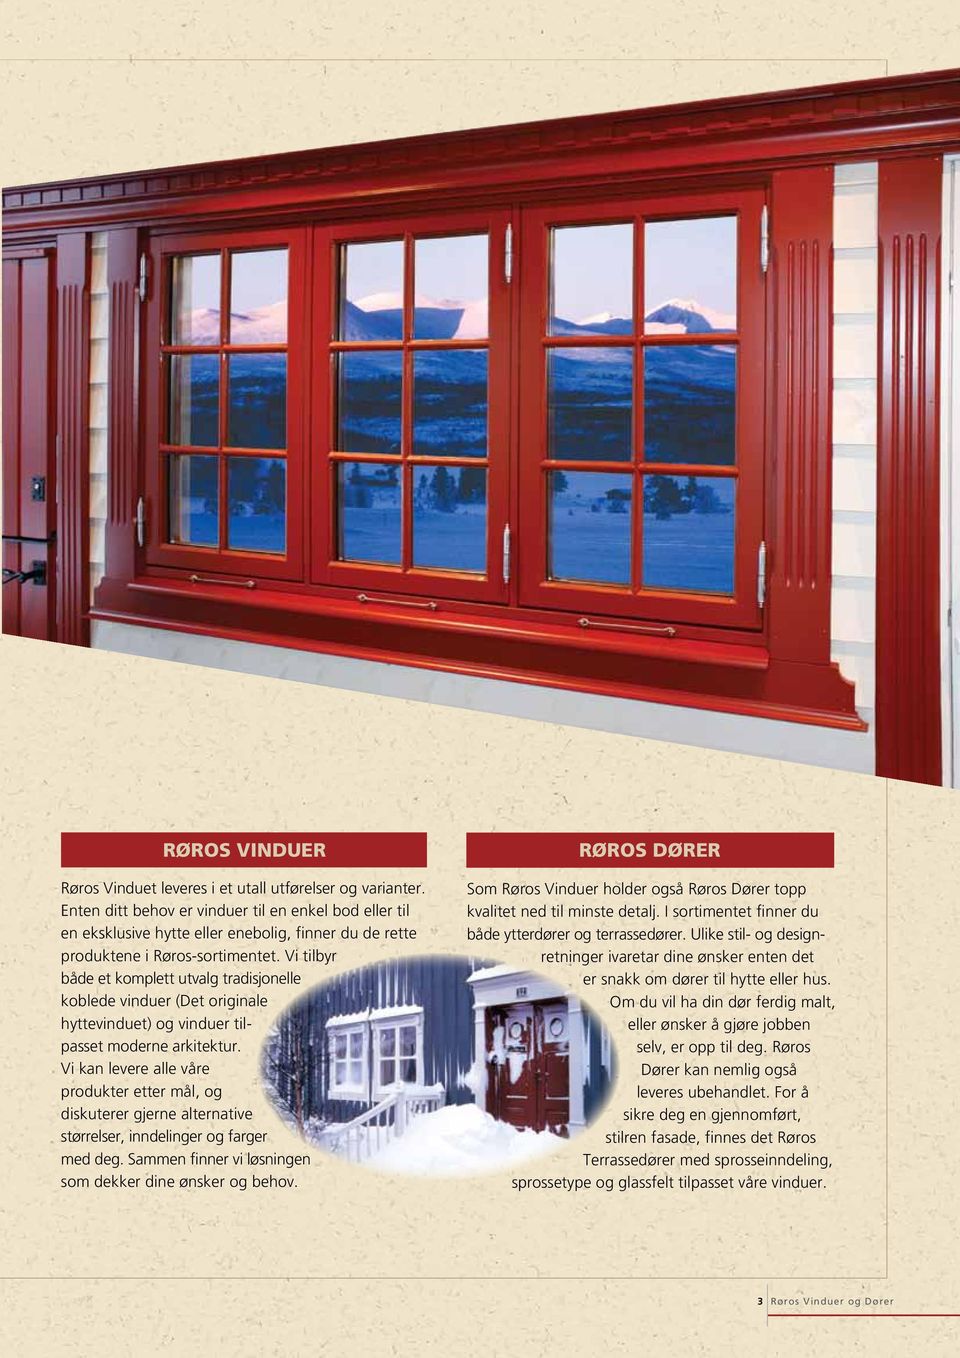 Vi tilbyr både et komplett utvalg tradisjonelle koblede vinduer (Det originale hyttevinduet) og vinduer tilpasset moderne arkitektur.